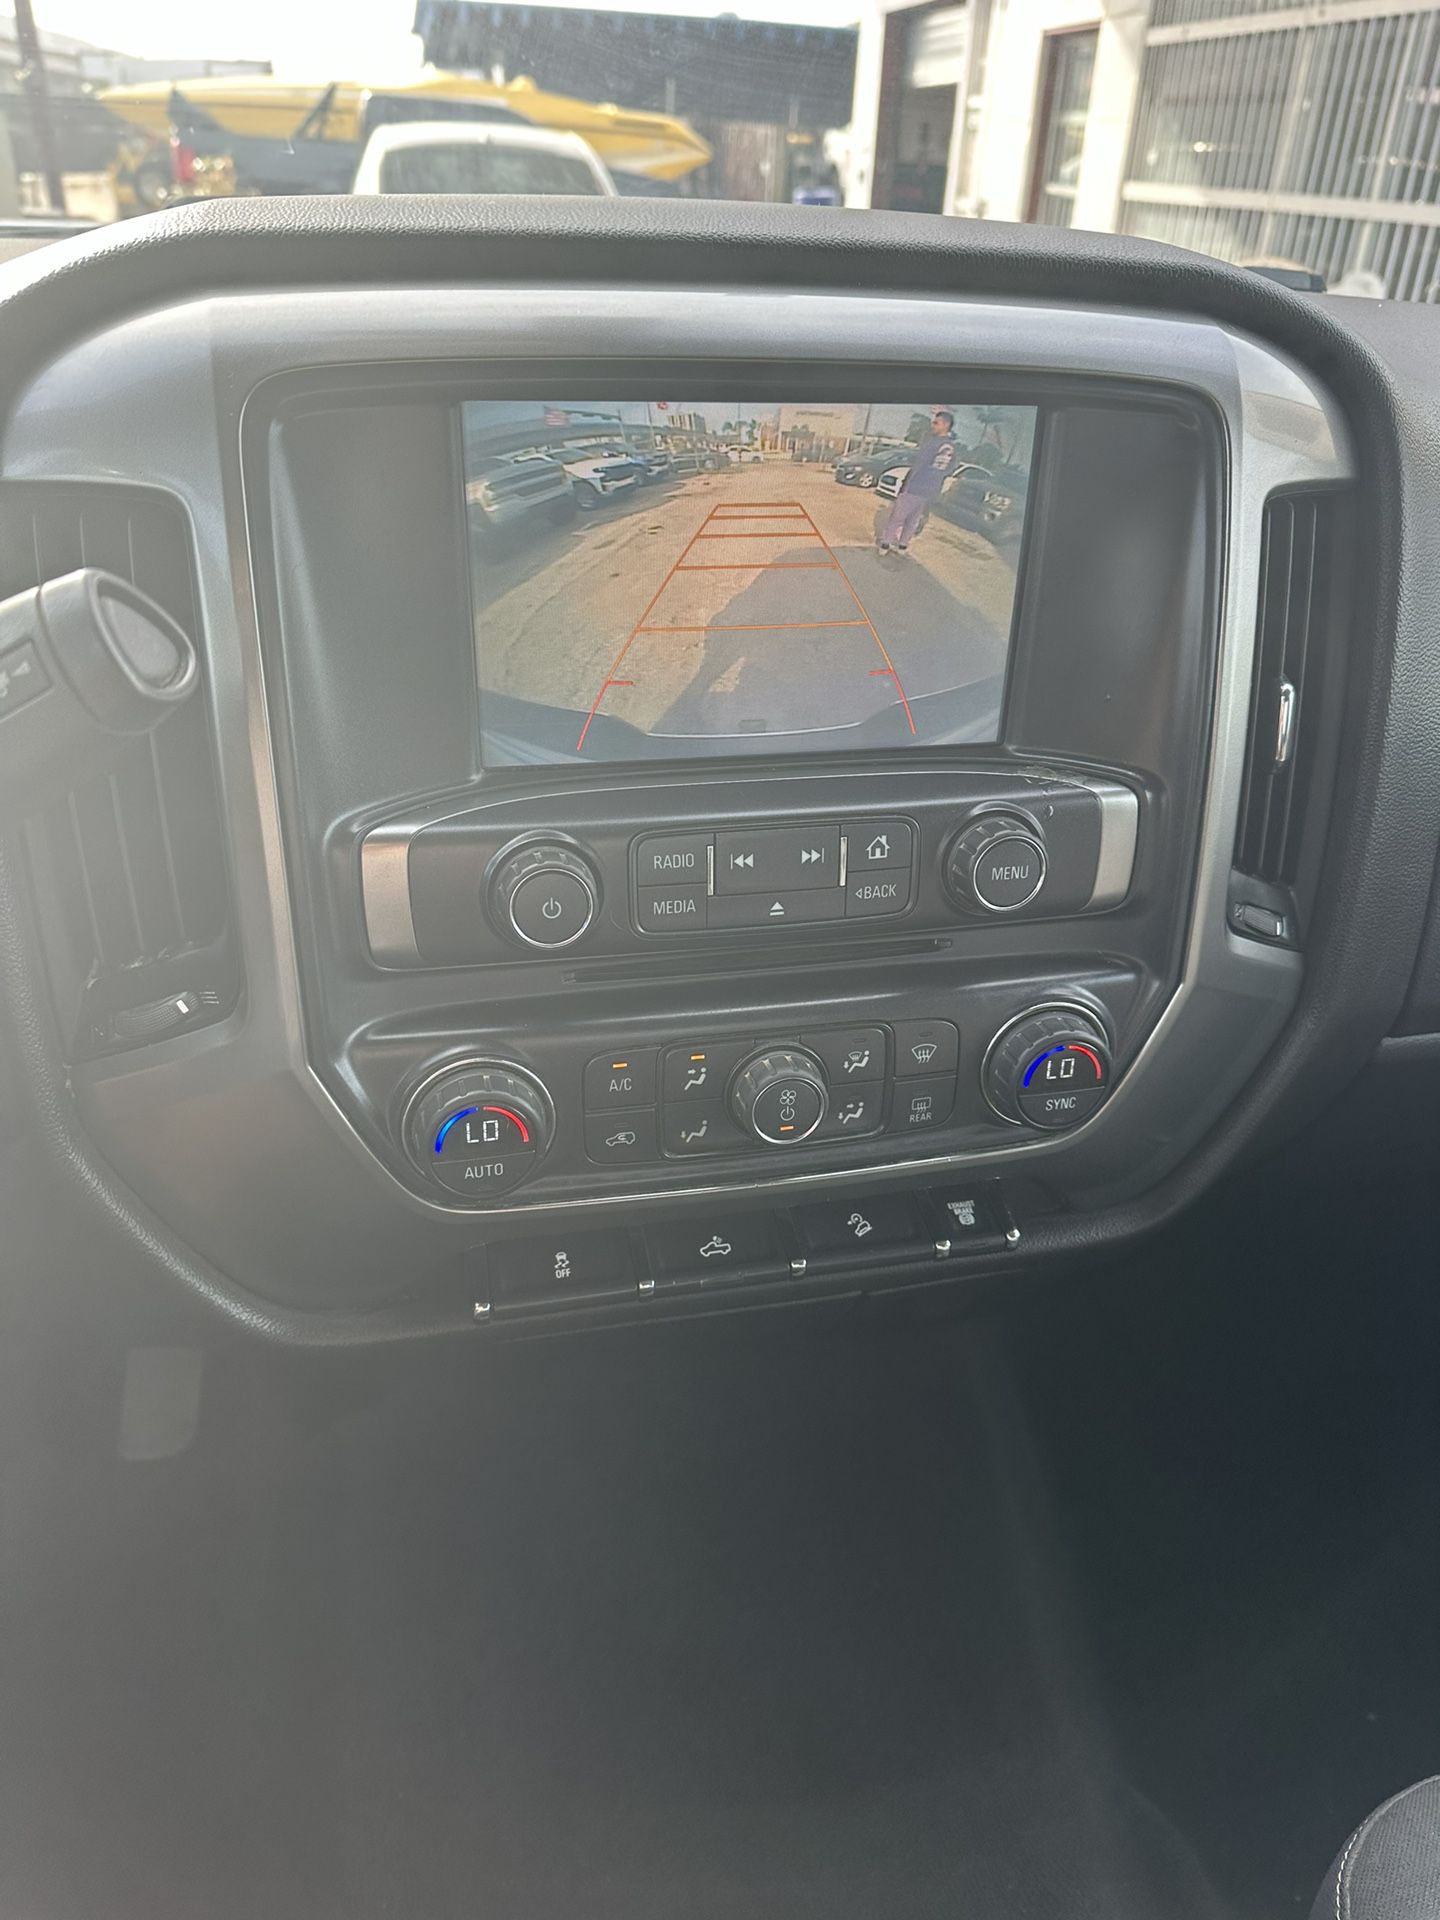 used 2016 Chevy Silverado Z71 diesel 4x4 crew cab - interior view 3